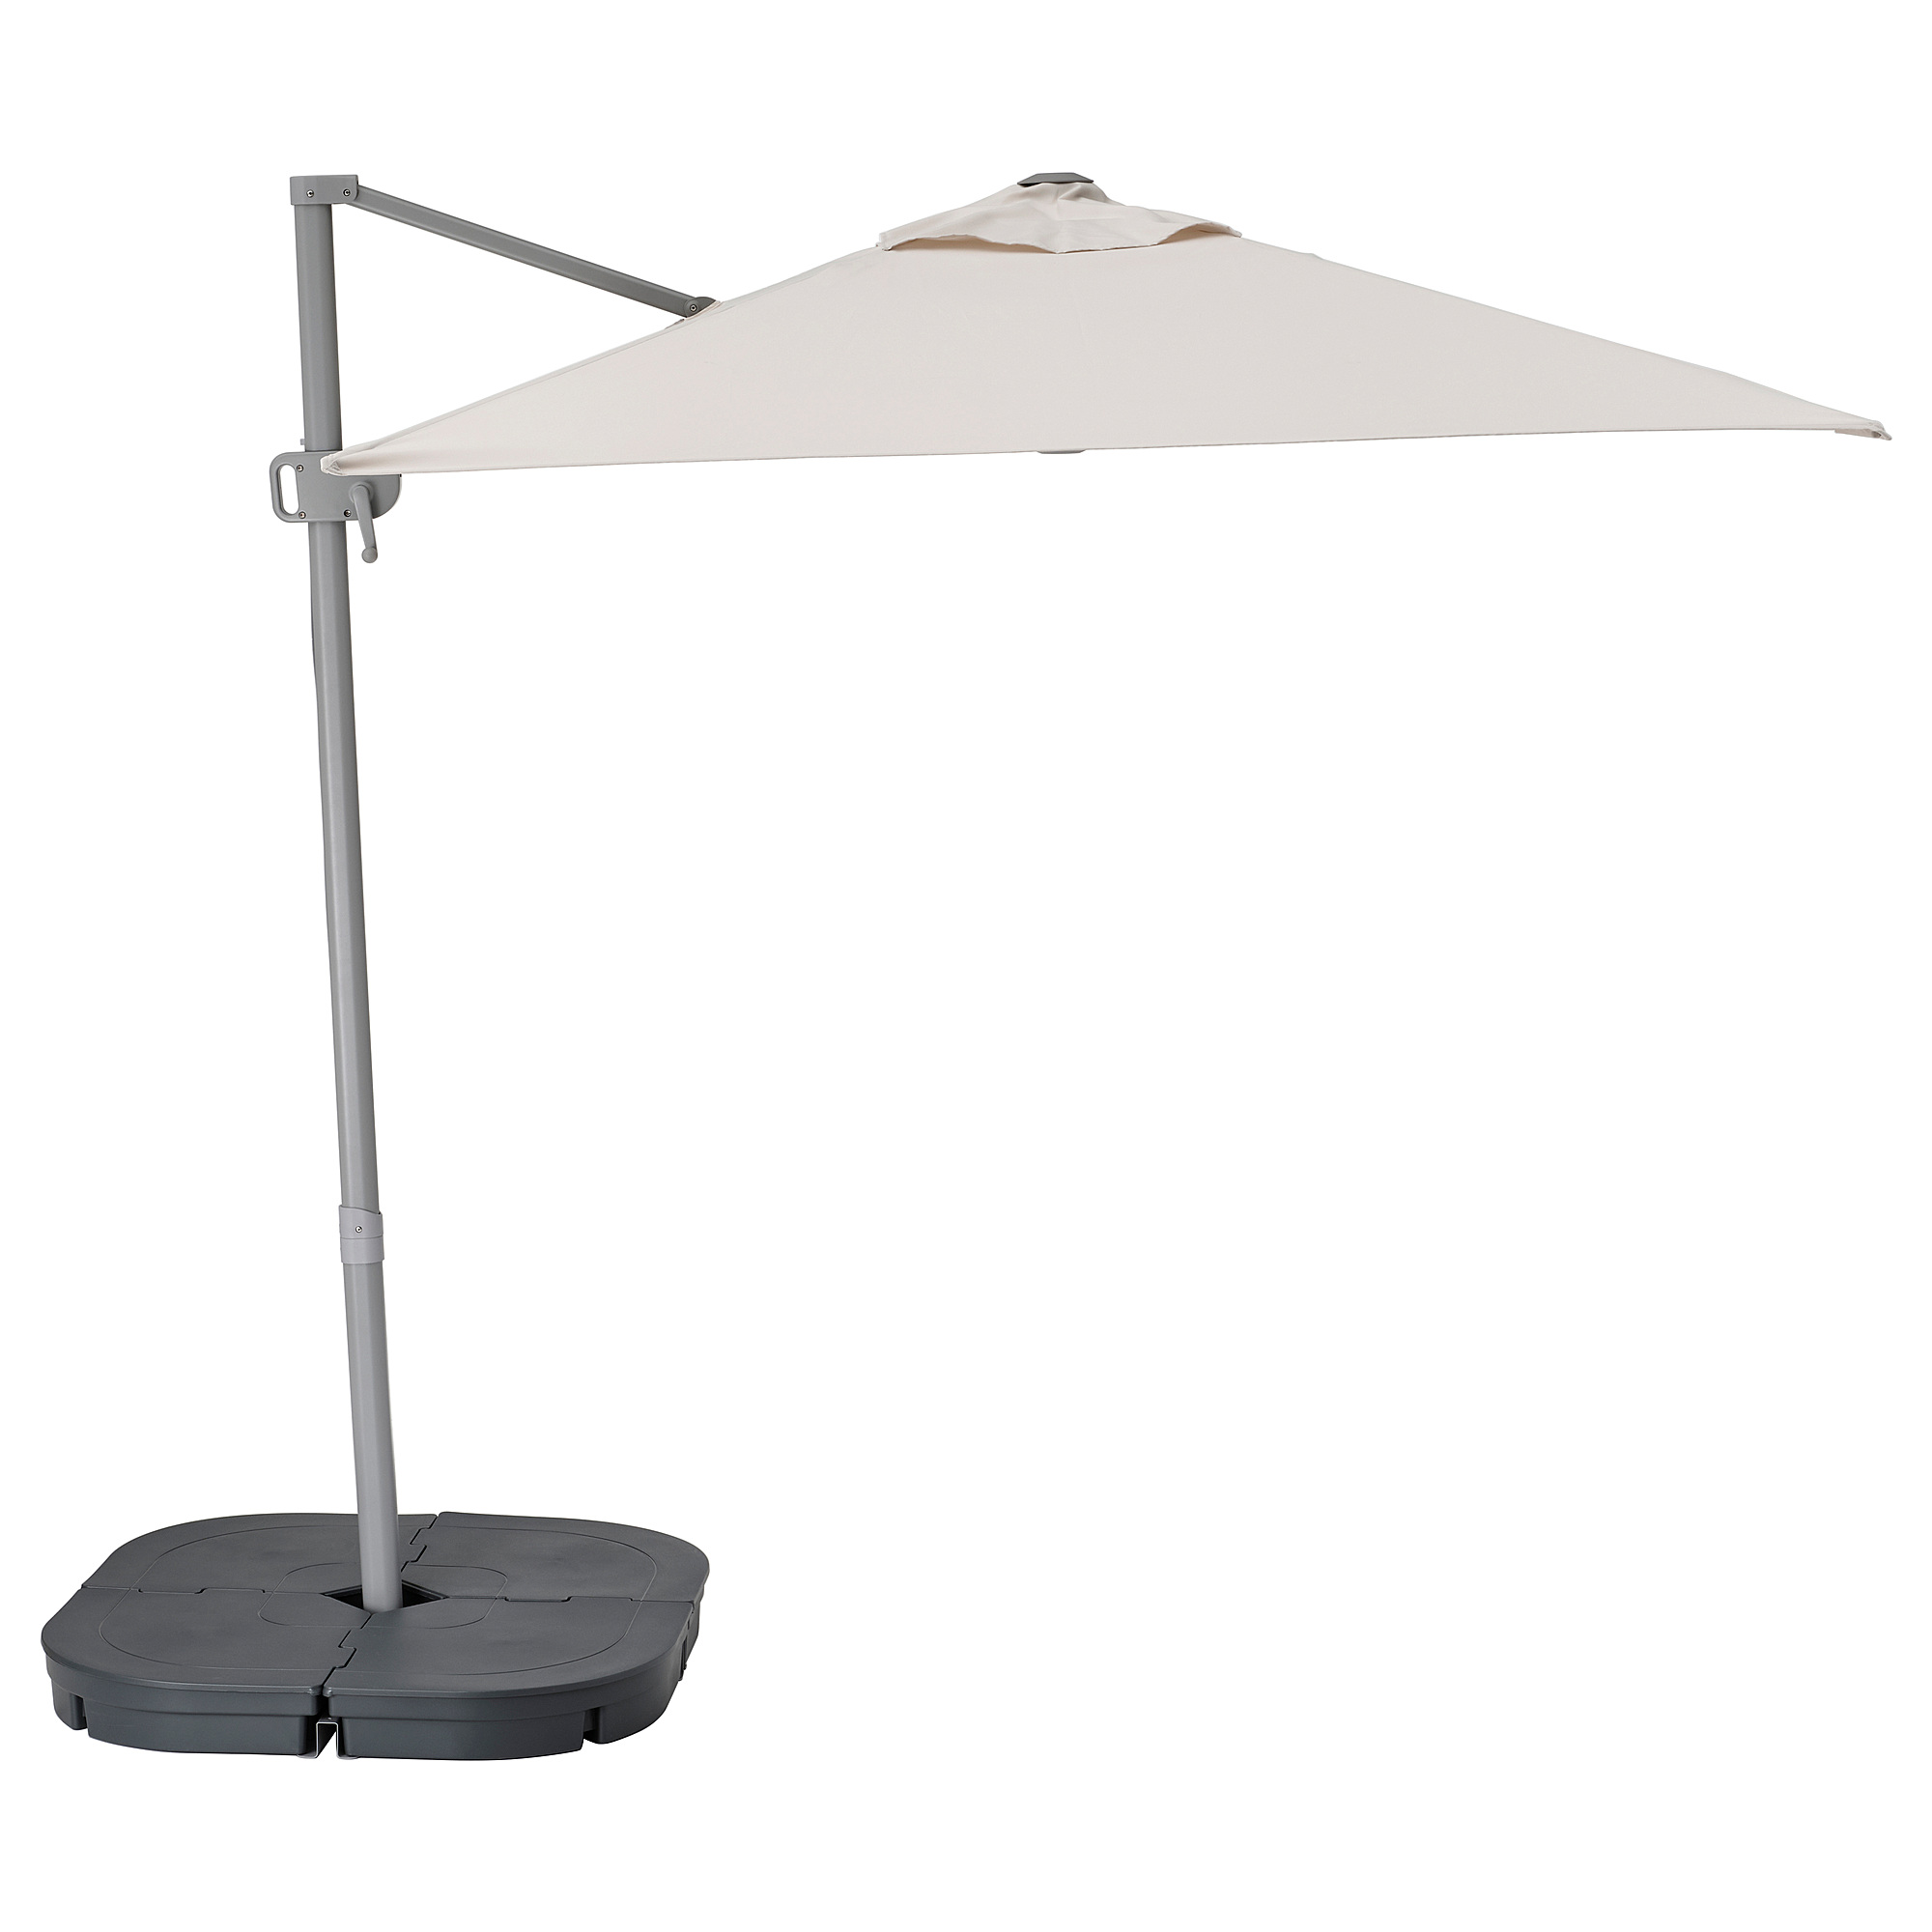 SVALÖN parasol, hanging with base